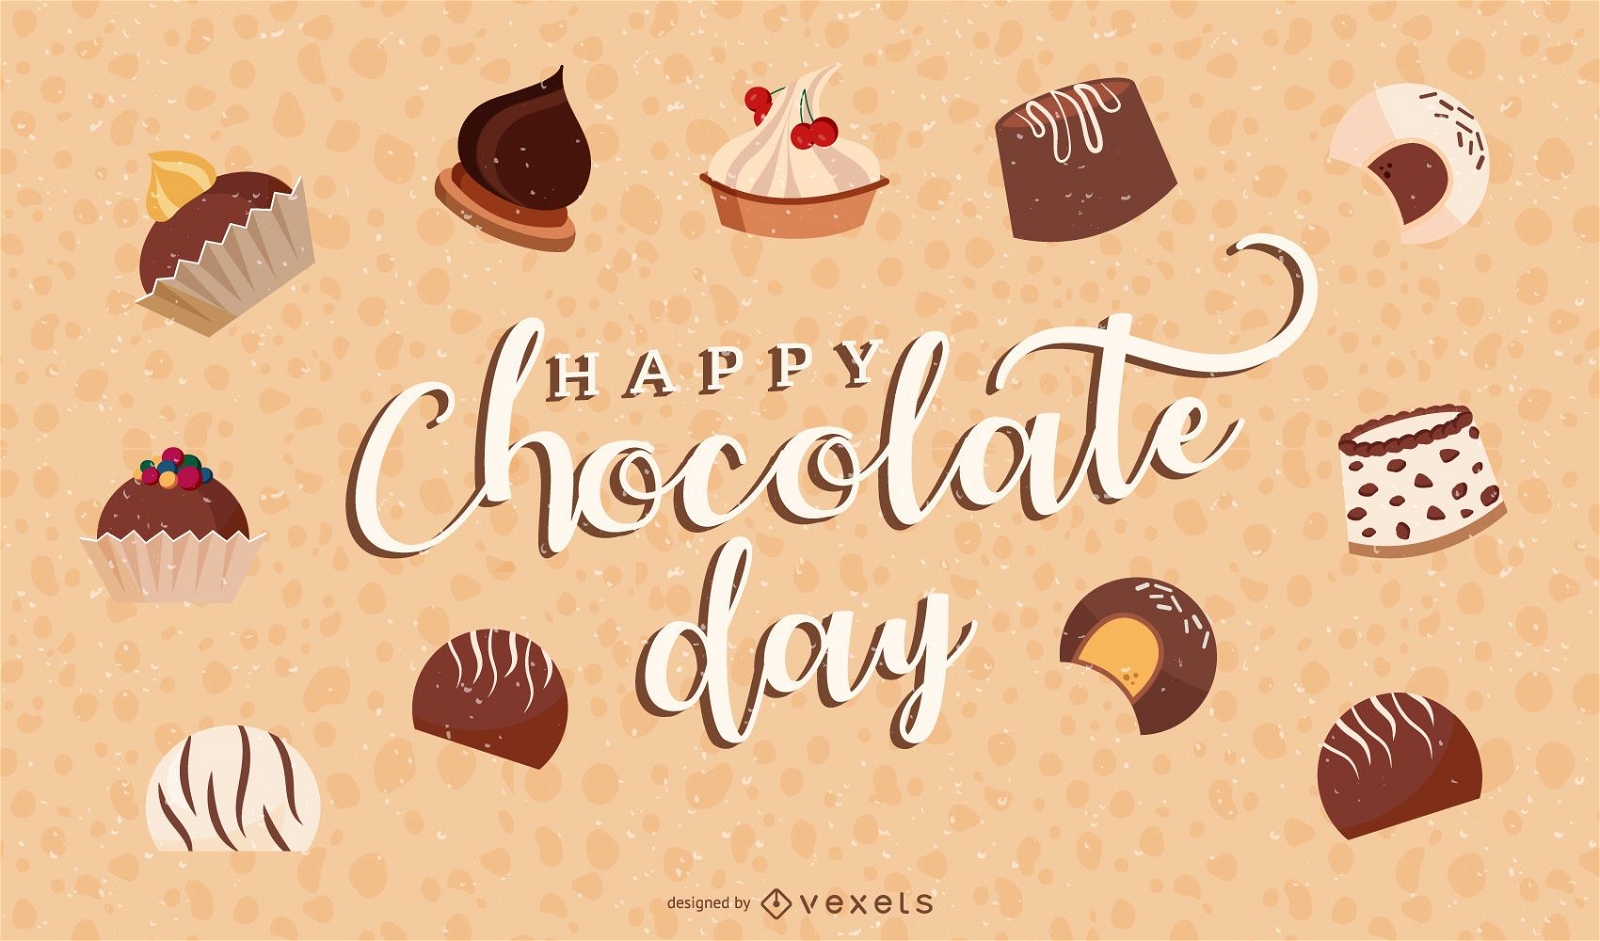 diseño de ilustración de feliz día de chocolate